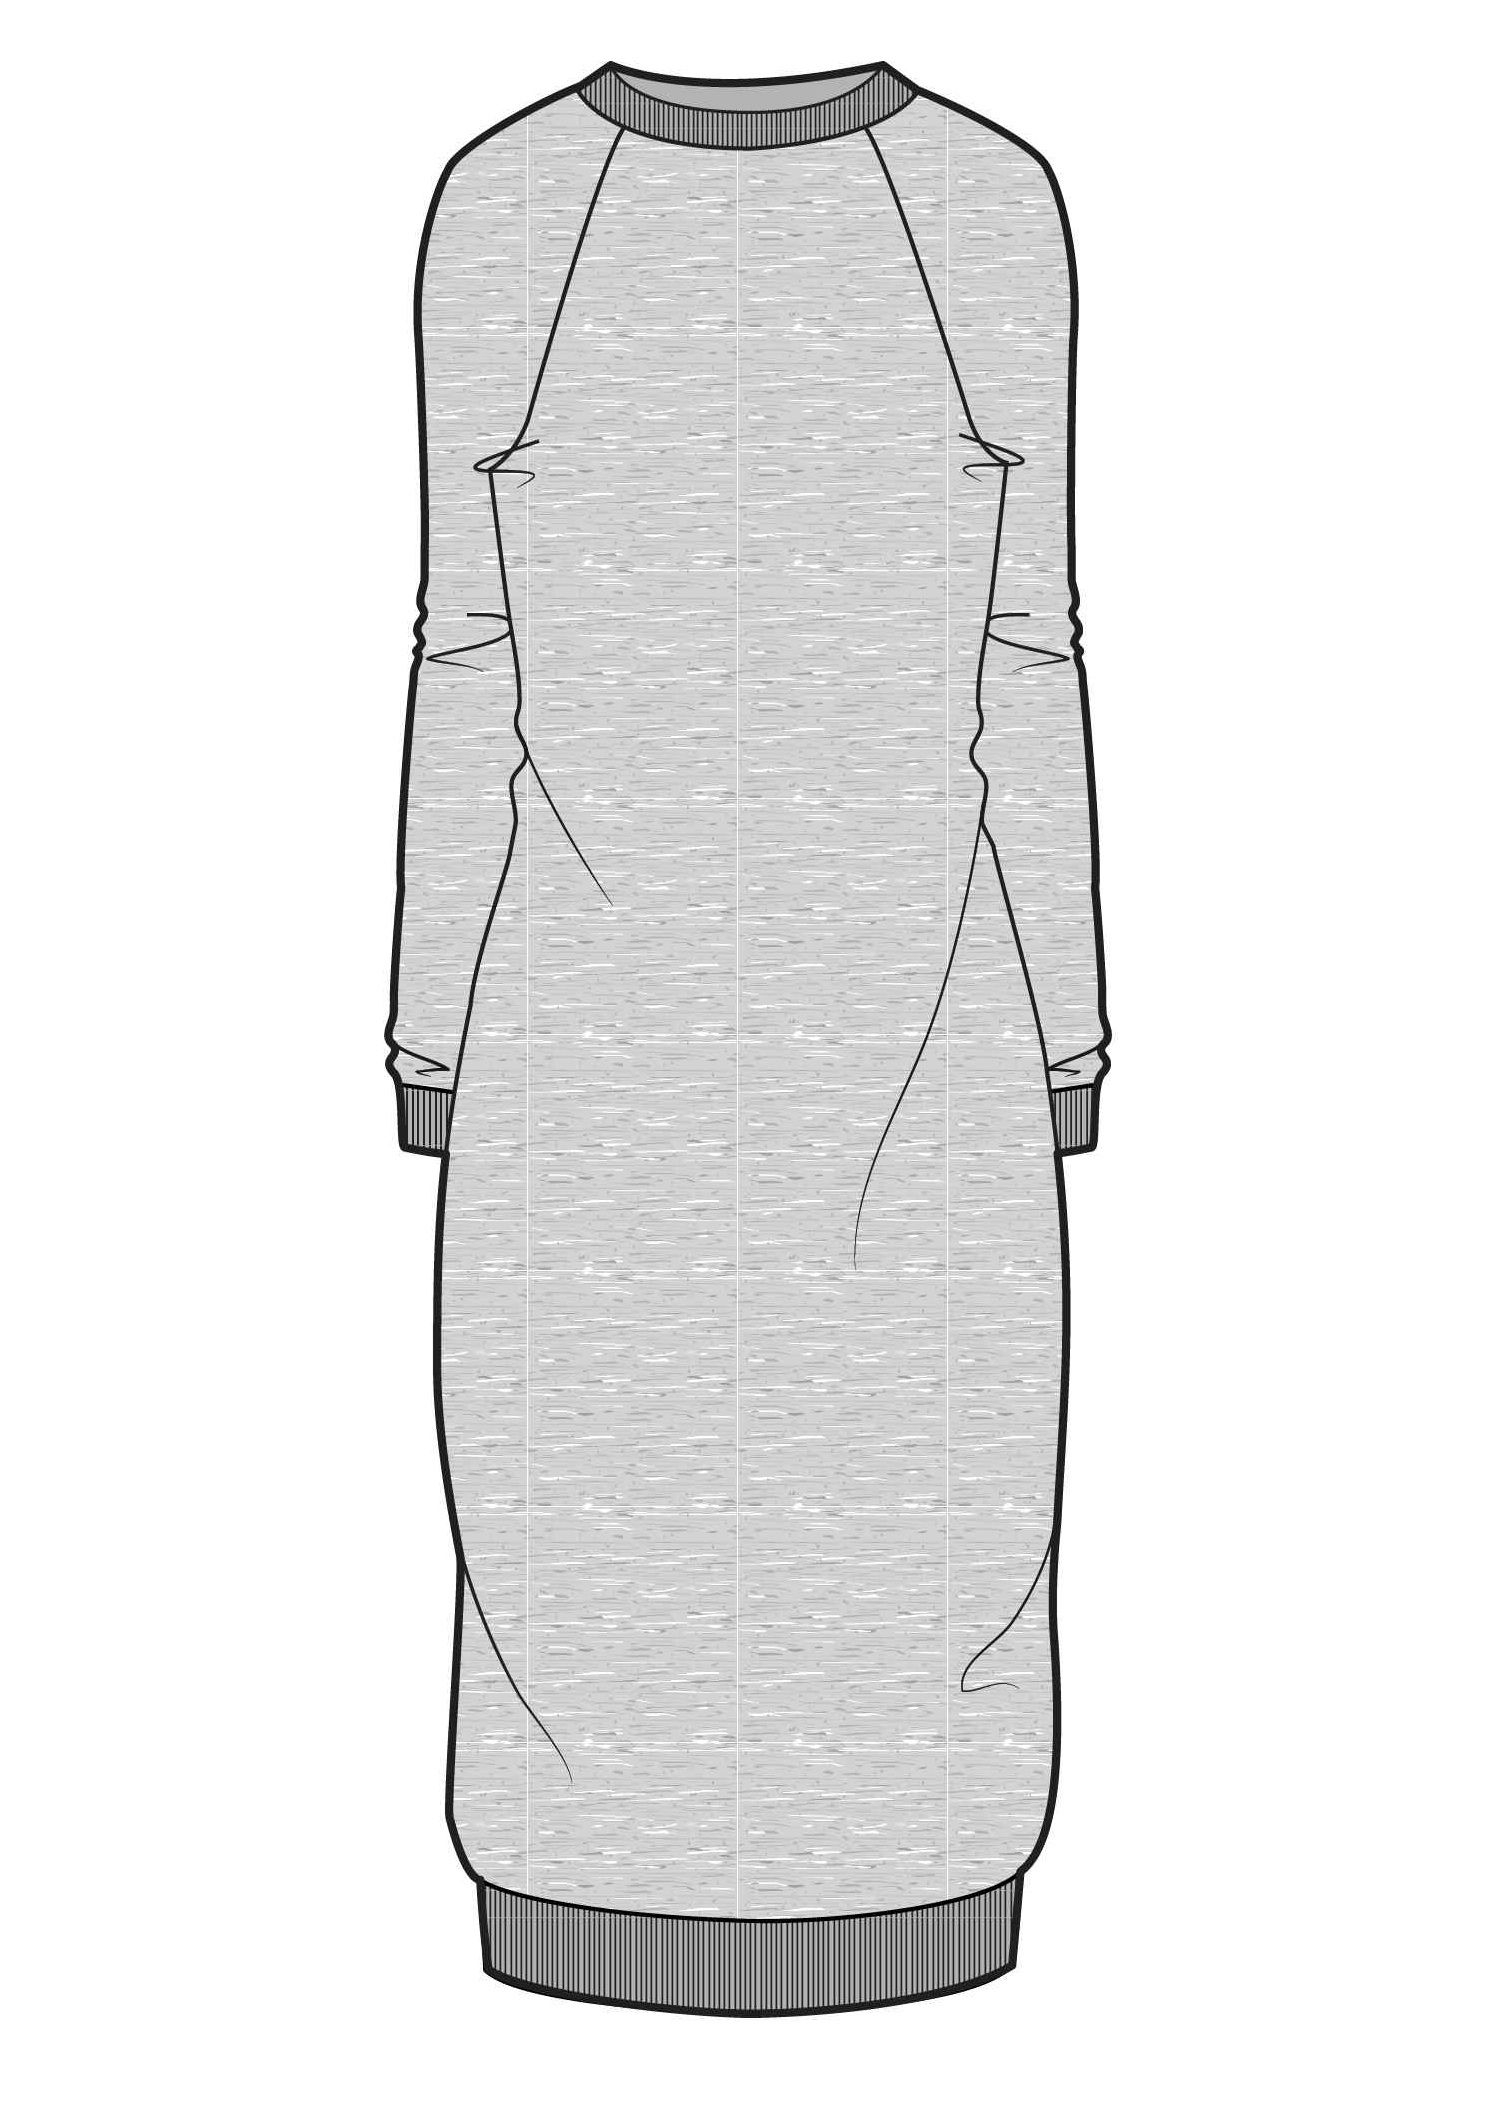 Эскиз трикотажного платья. Технический эскиз платья. Лекало платье толстовка. Технический эскиз платья из трикотажа. Удлиненный рисунок